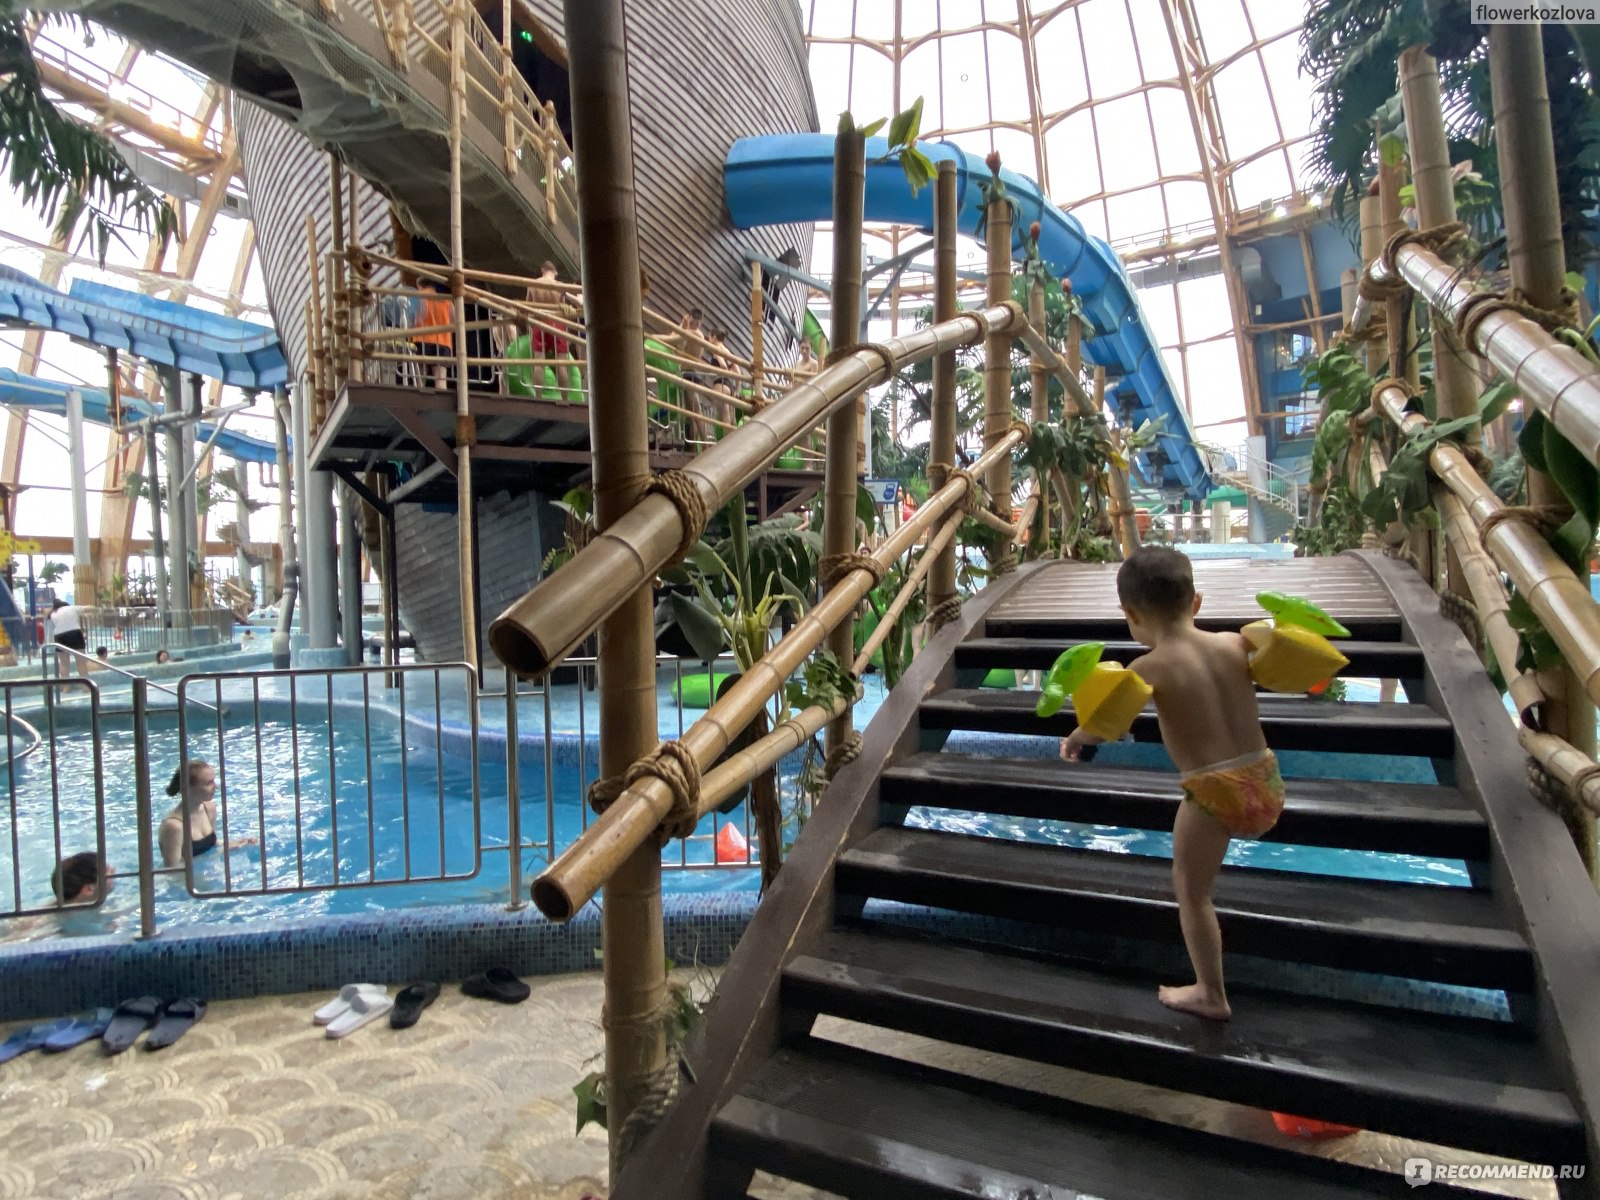 питерленд в санкт петербурге официальный аквапарк